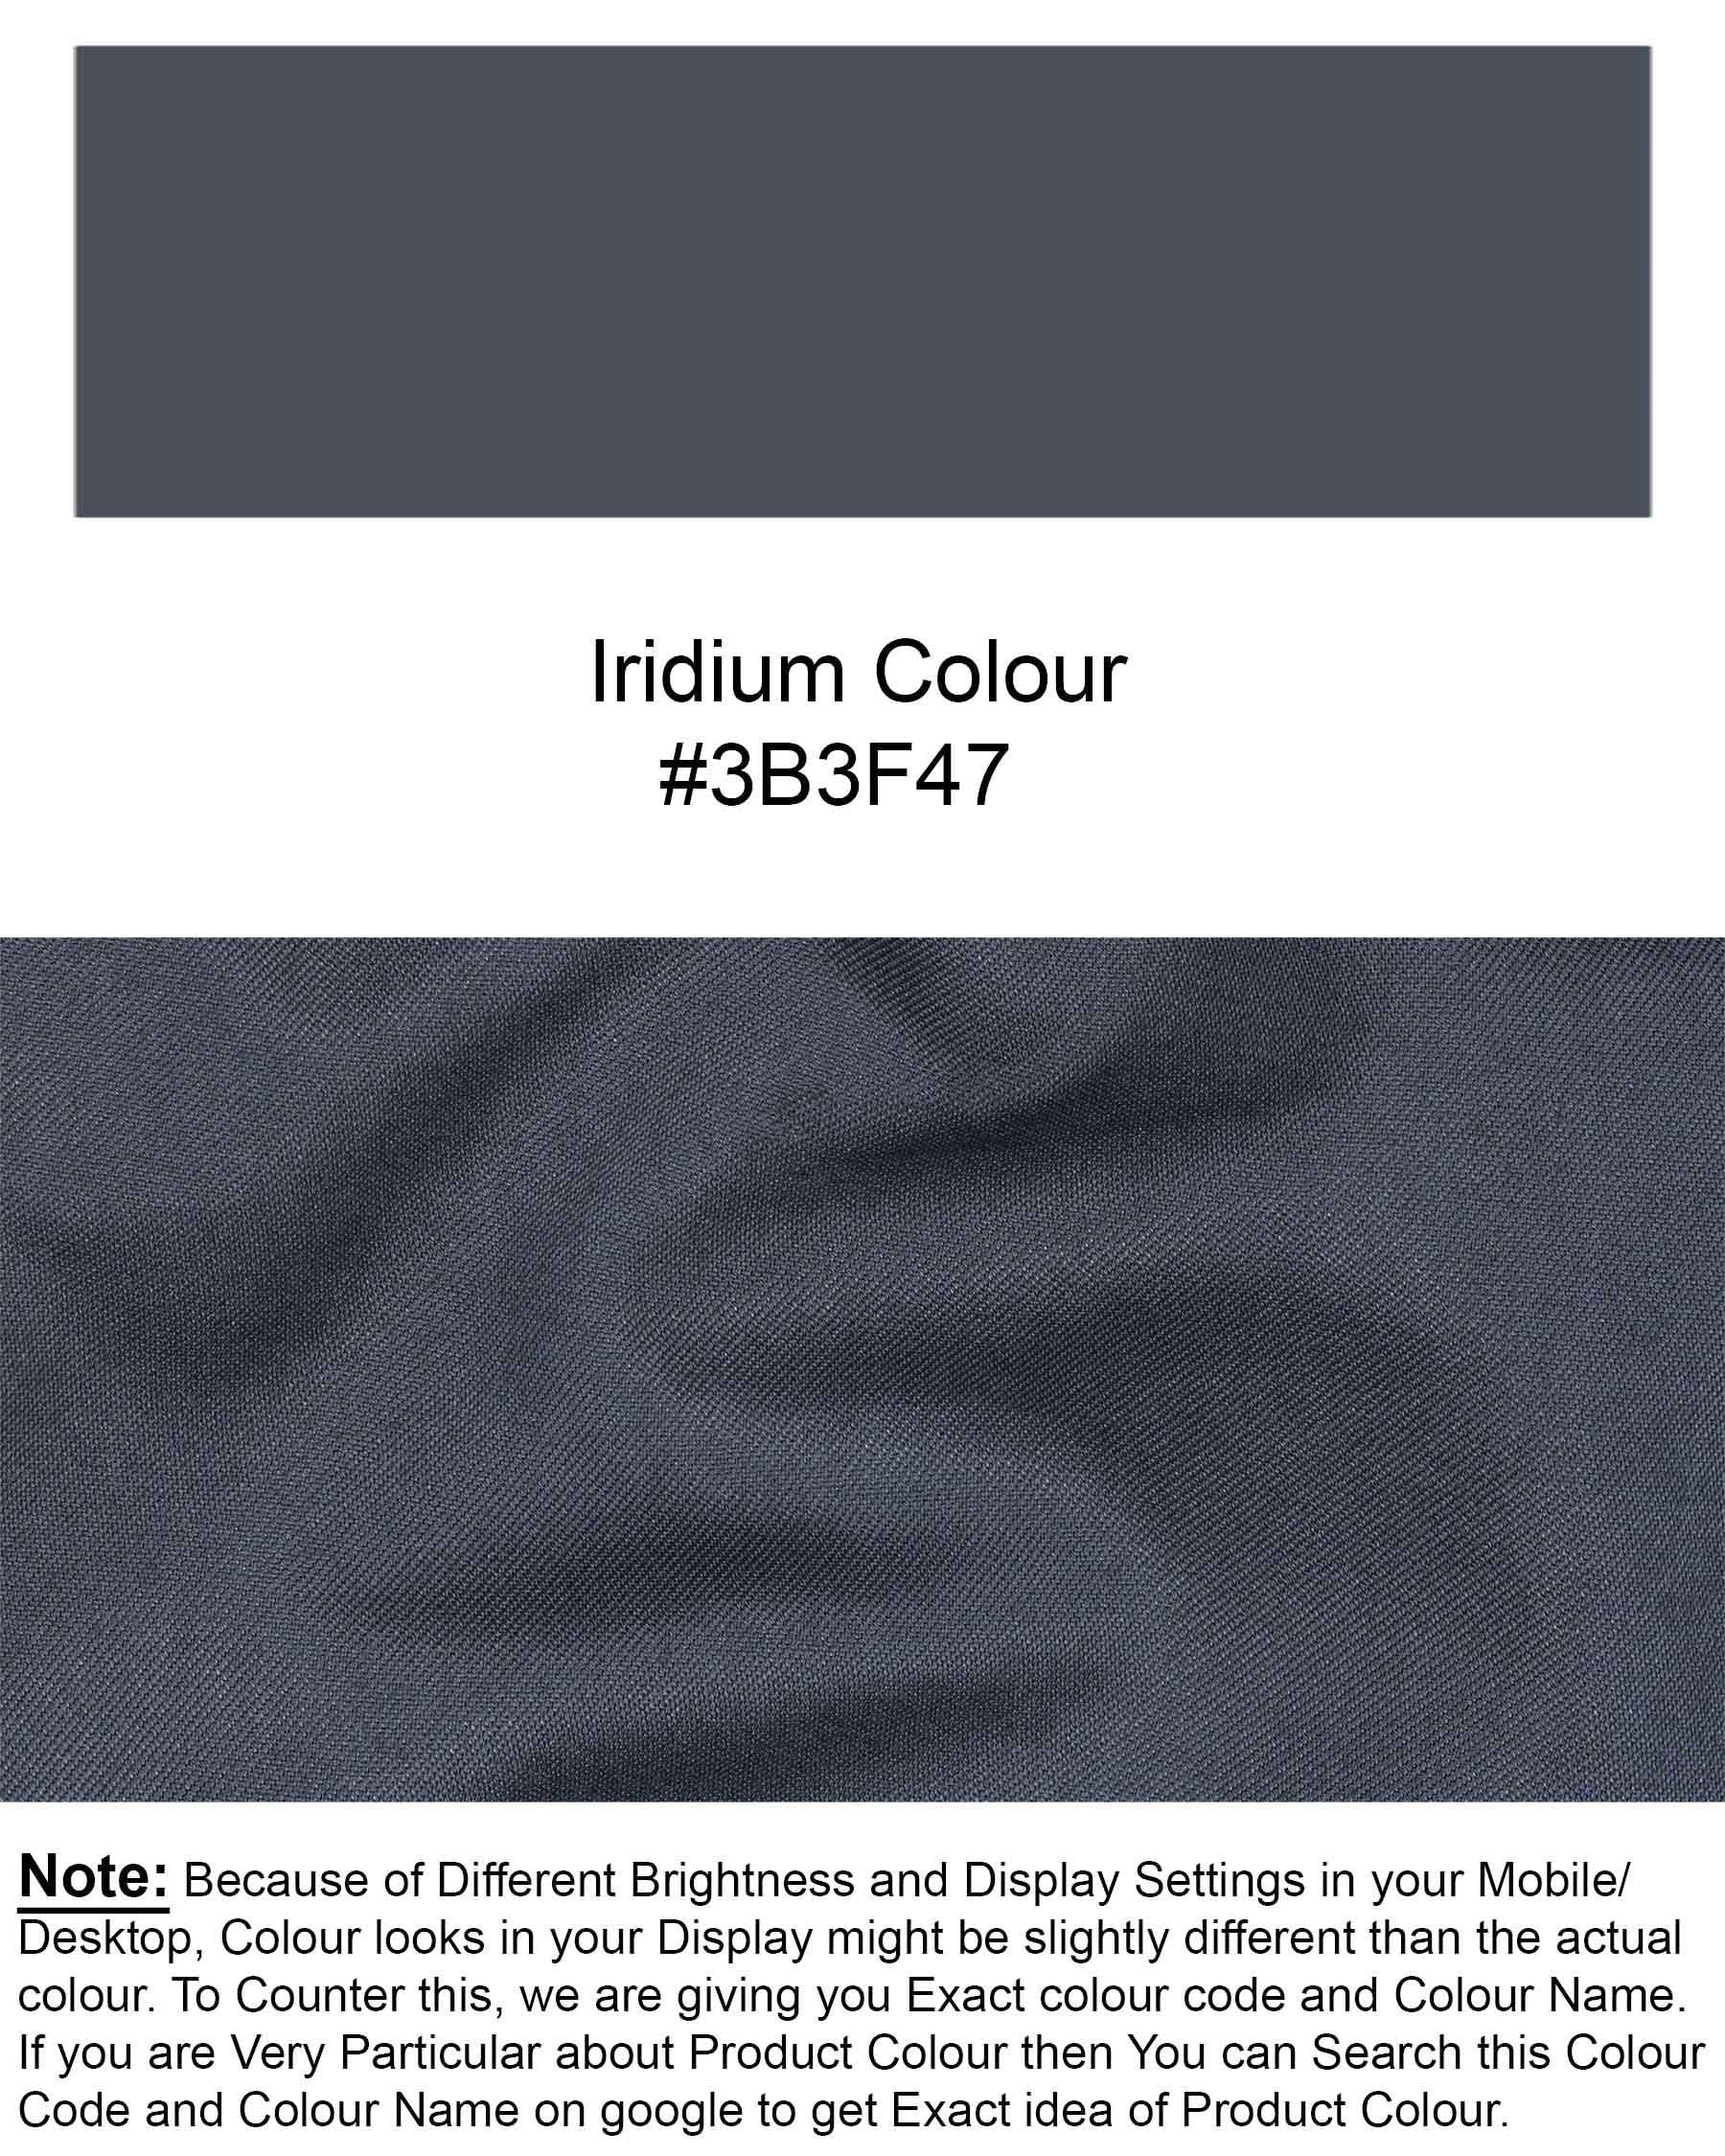 Iridium Grey Solid Waistcoat V1913-36, V1913-38, V1913-40, V1913-42, V1913-44, V1913-46, V1913-48, V1913-50, V1913-52, V1913-54, V1913-56, V1913-58, V1913-60